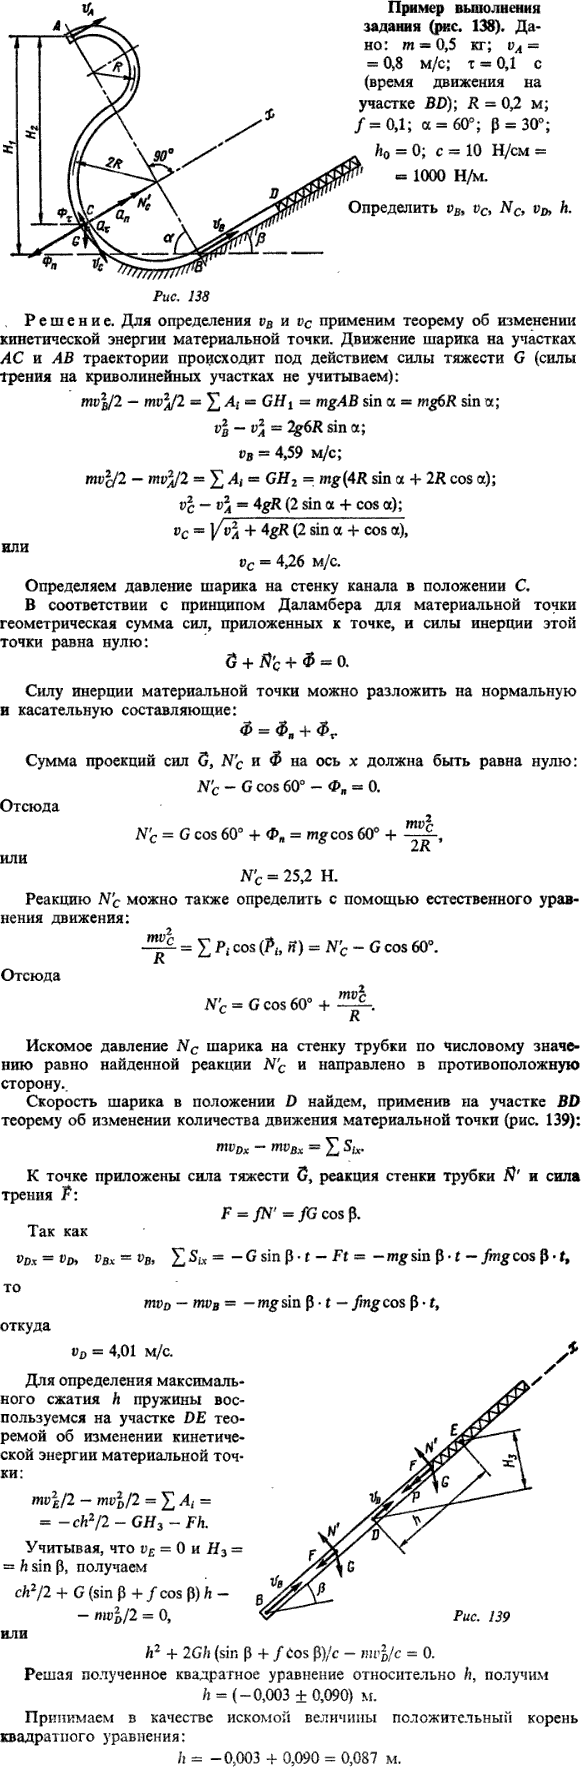 Пример решения Д6 Яблонский. Дано m =0,5 кг; vA= 0,8 м/с; т = 0,1 с время движения на участке BD, R = 0,2 м; f = 0,1; a = 60; b= ..., Задача 14739, Теоретическая механика